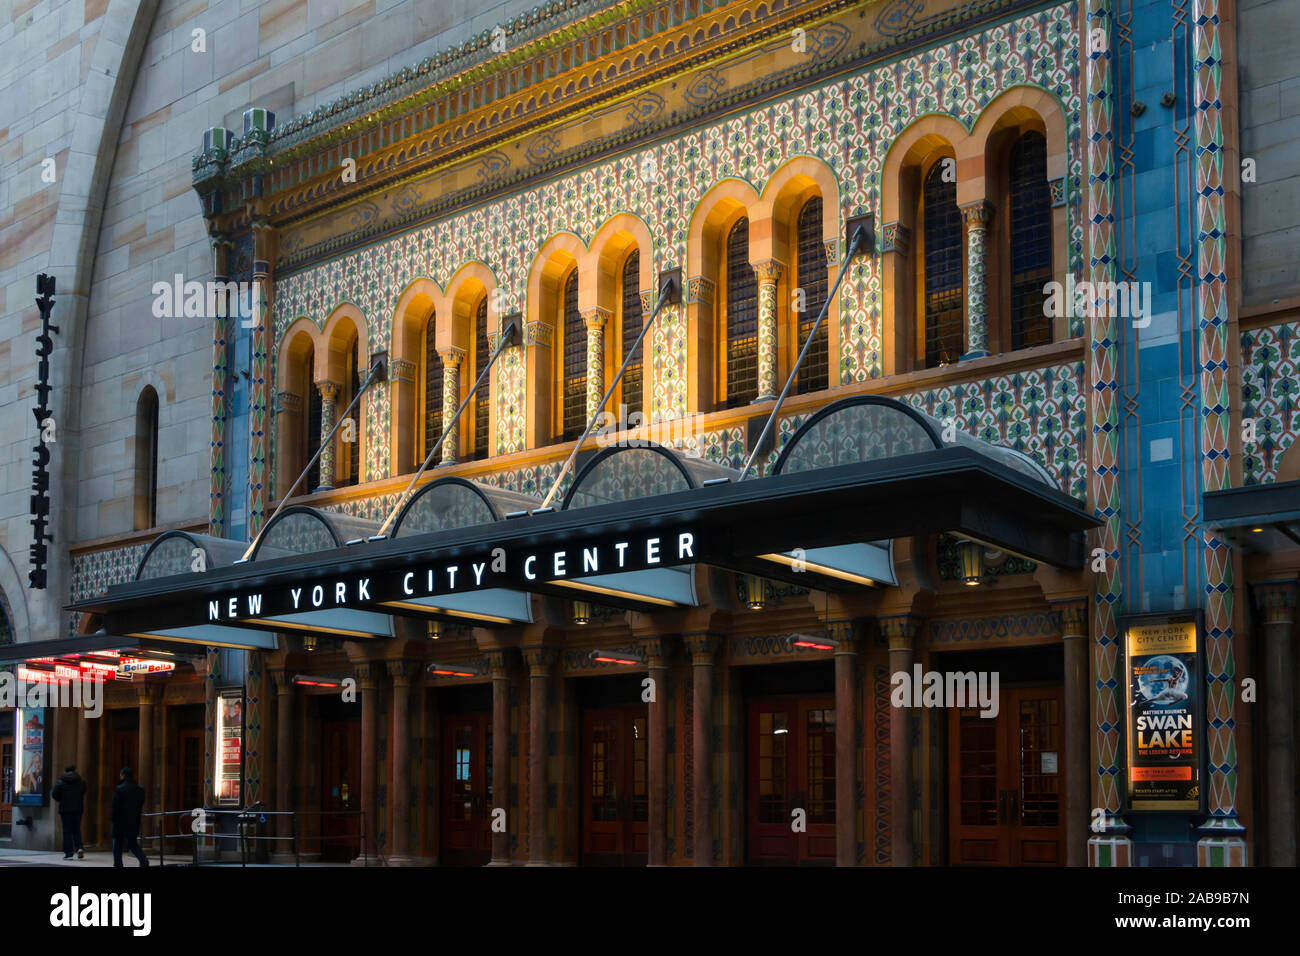 New York City Center ist ein 2.257-Sitz maurischen Revival Theater an 131 West 55th Street, New York, USA Stockfoto